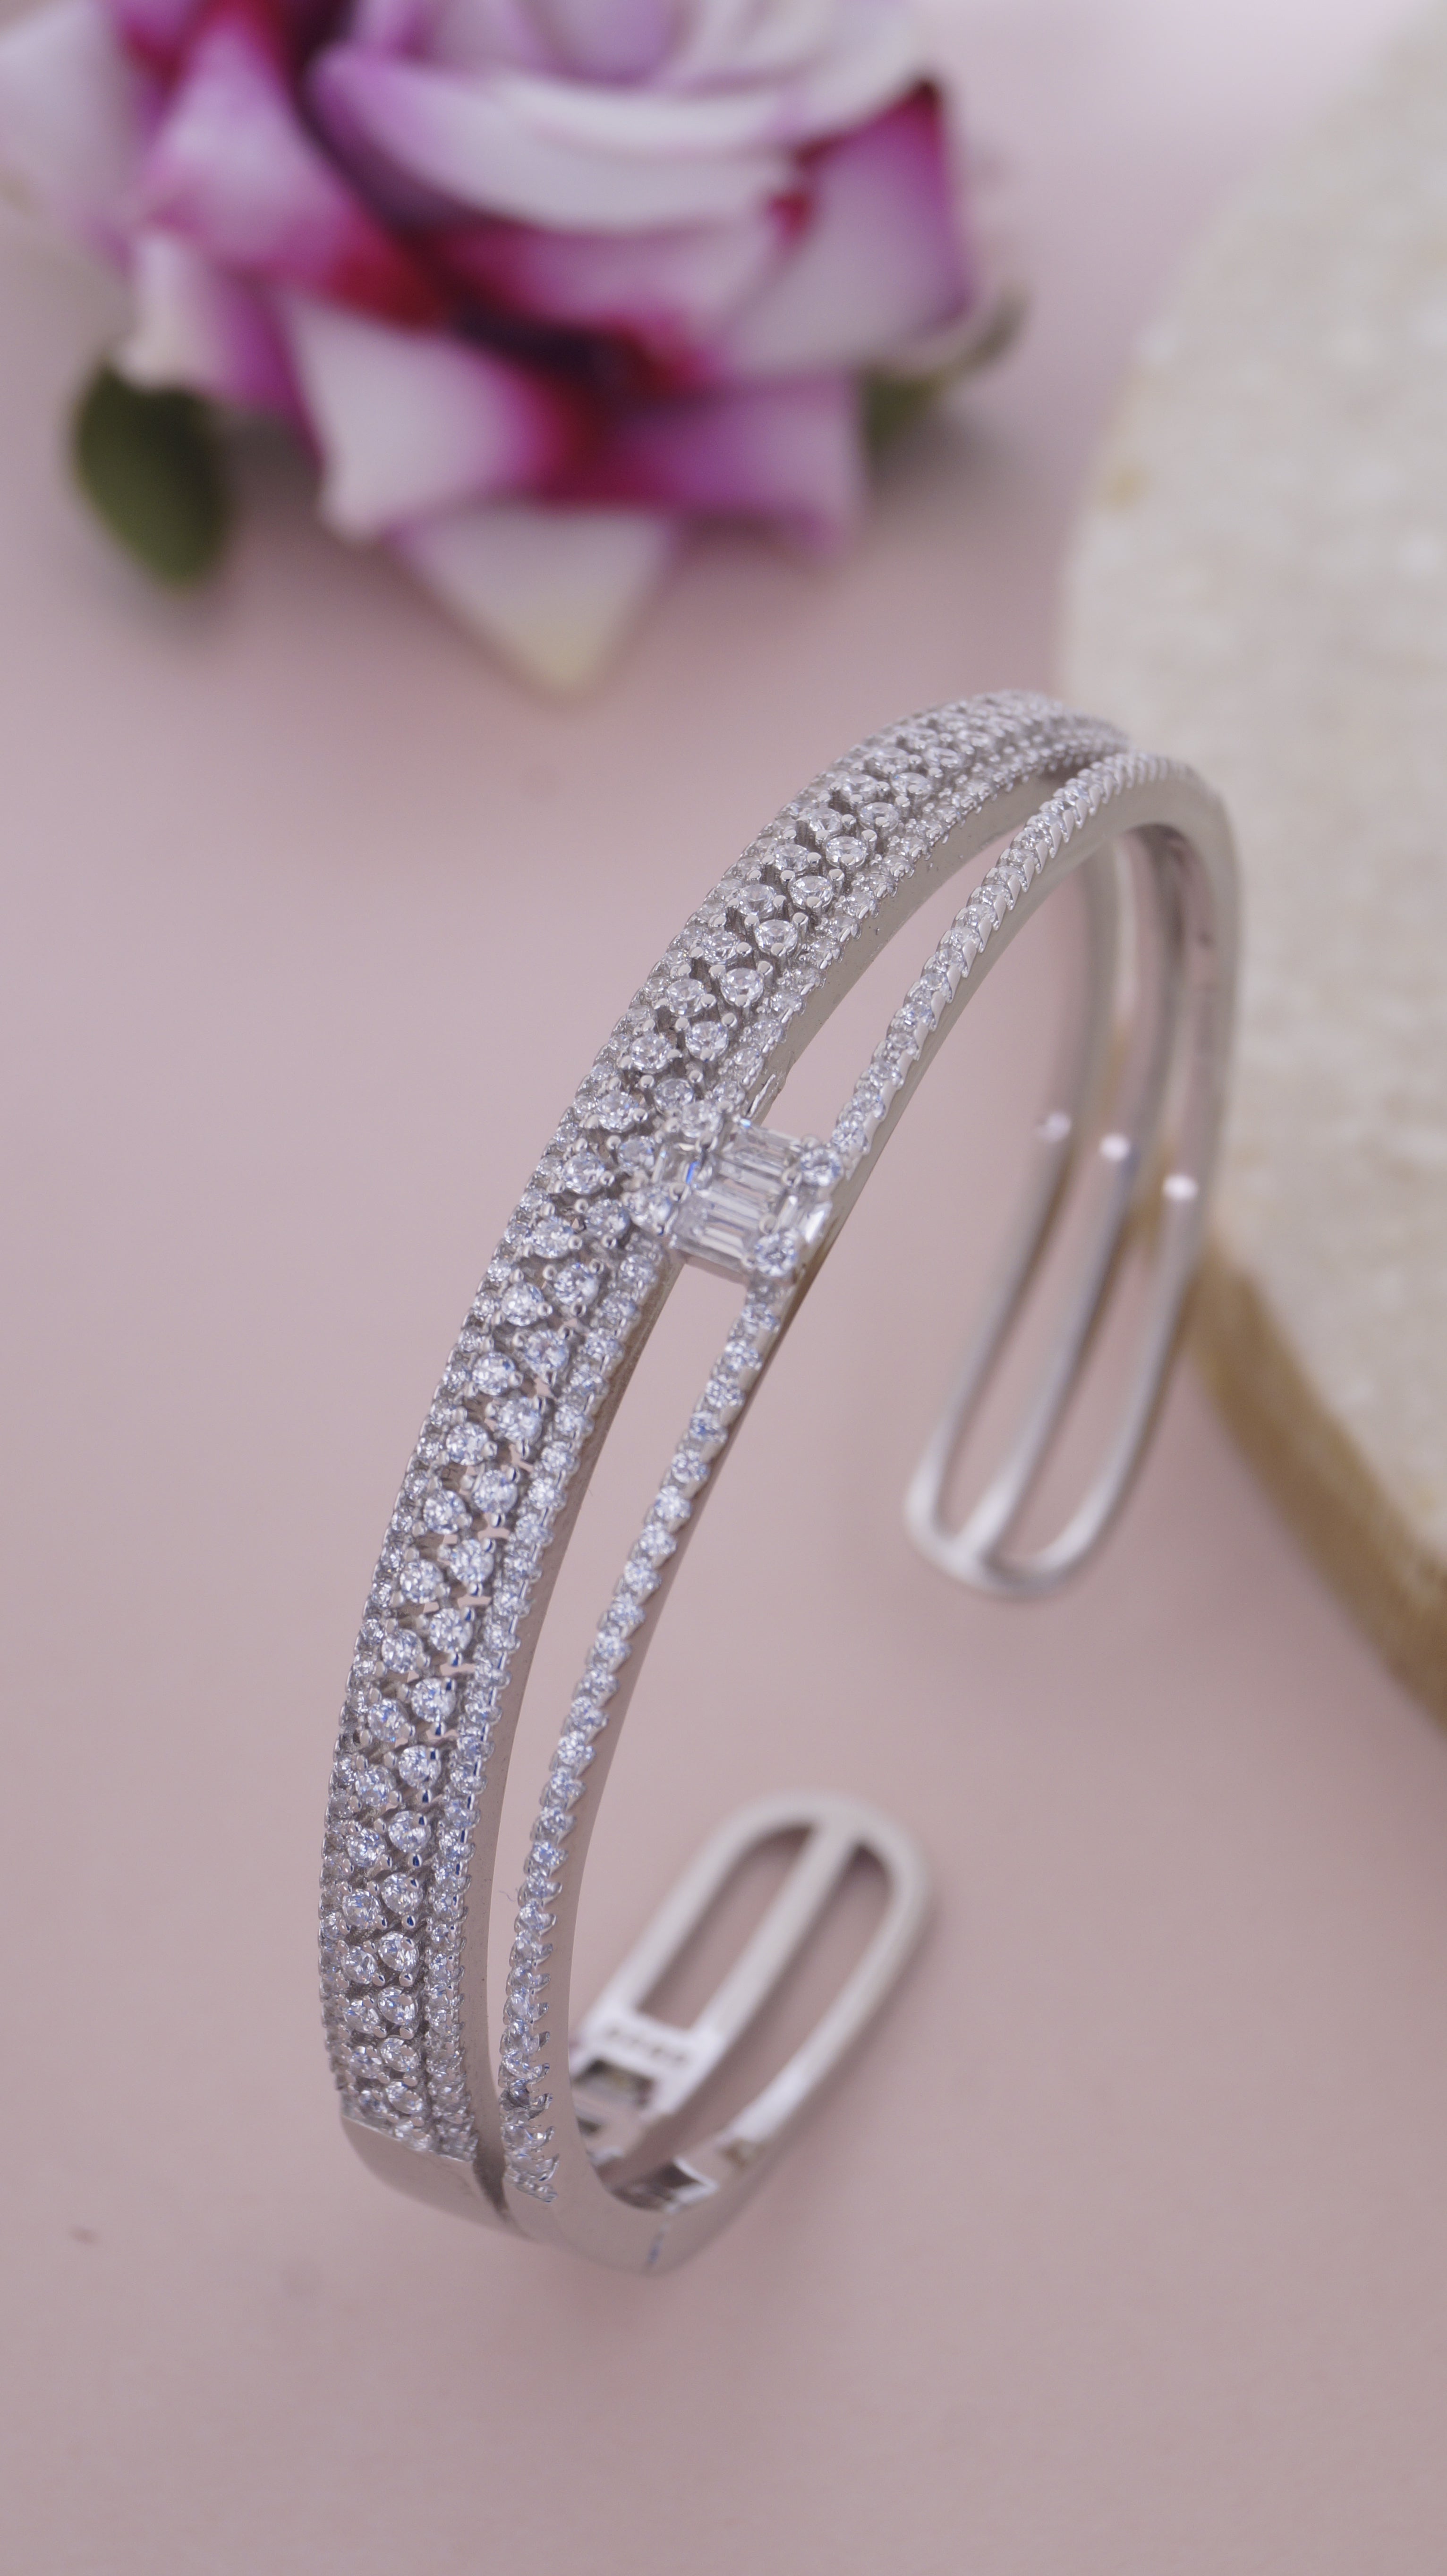 AD Bracelets For Women Latest Designs Shop Now – Gehna Shop